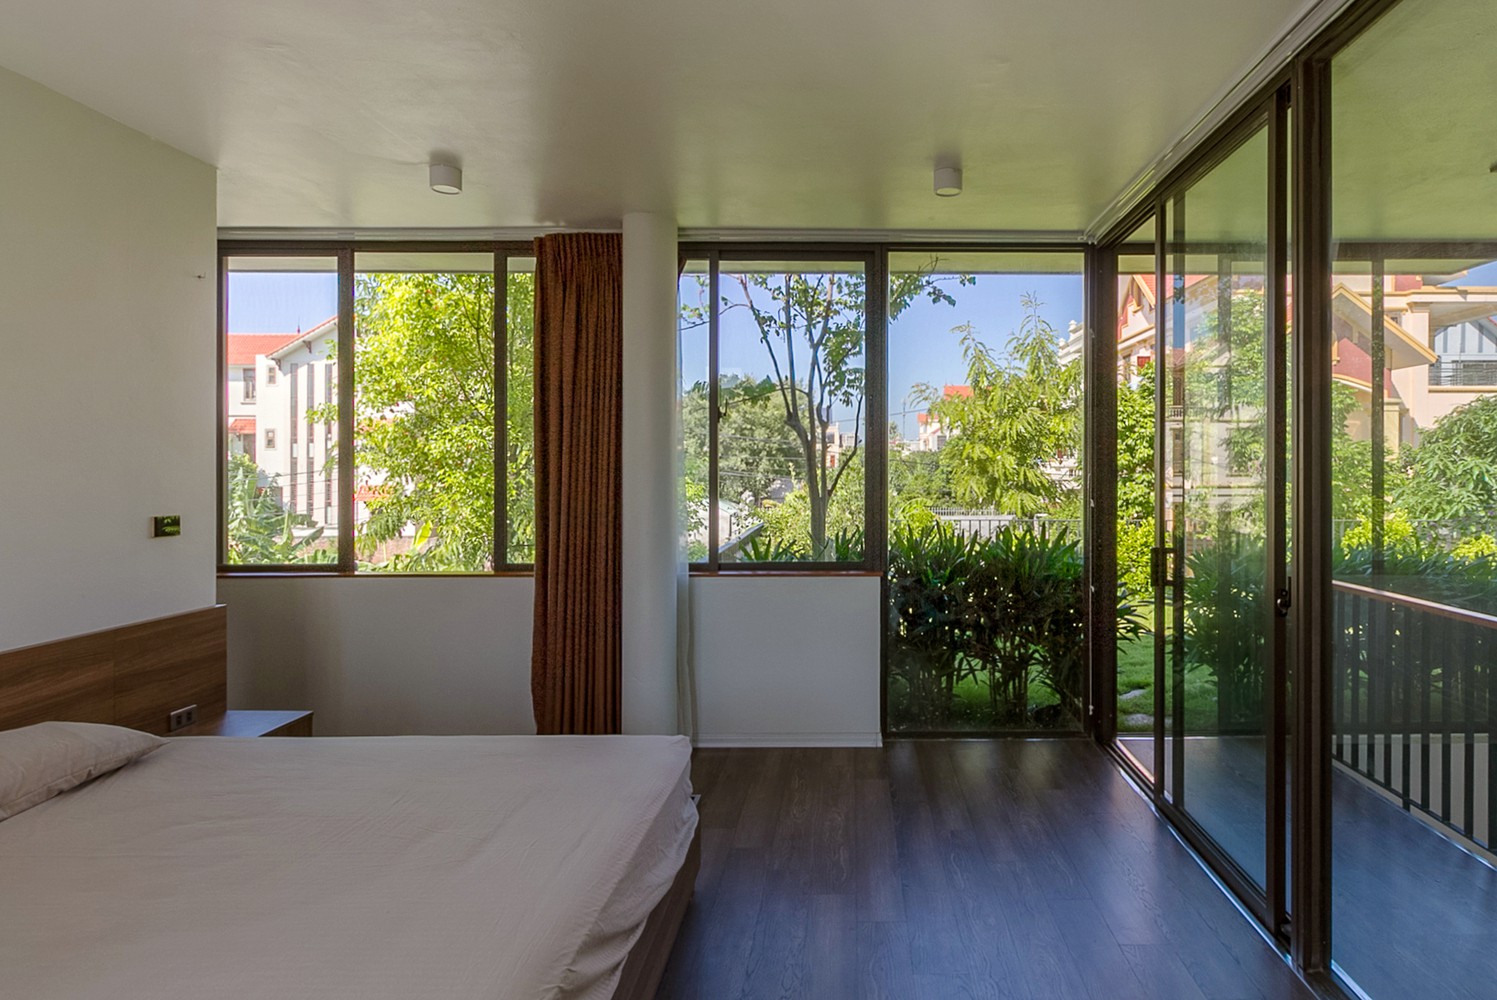 Hình ảnh phòng ngủ có thiết kế đơn giản với giường nệm màu trắng, cửa sổ kính, rèm cửa